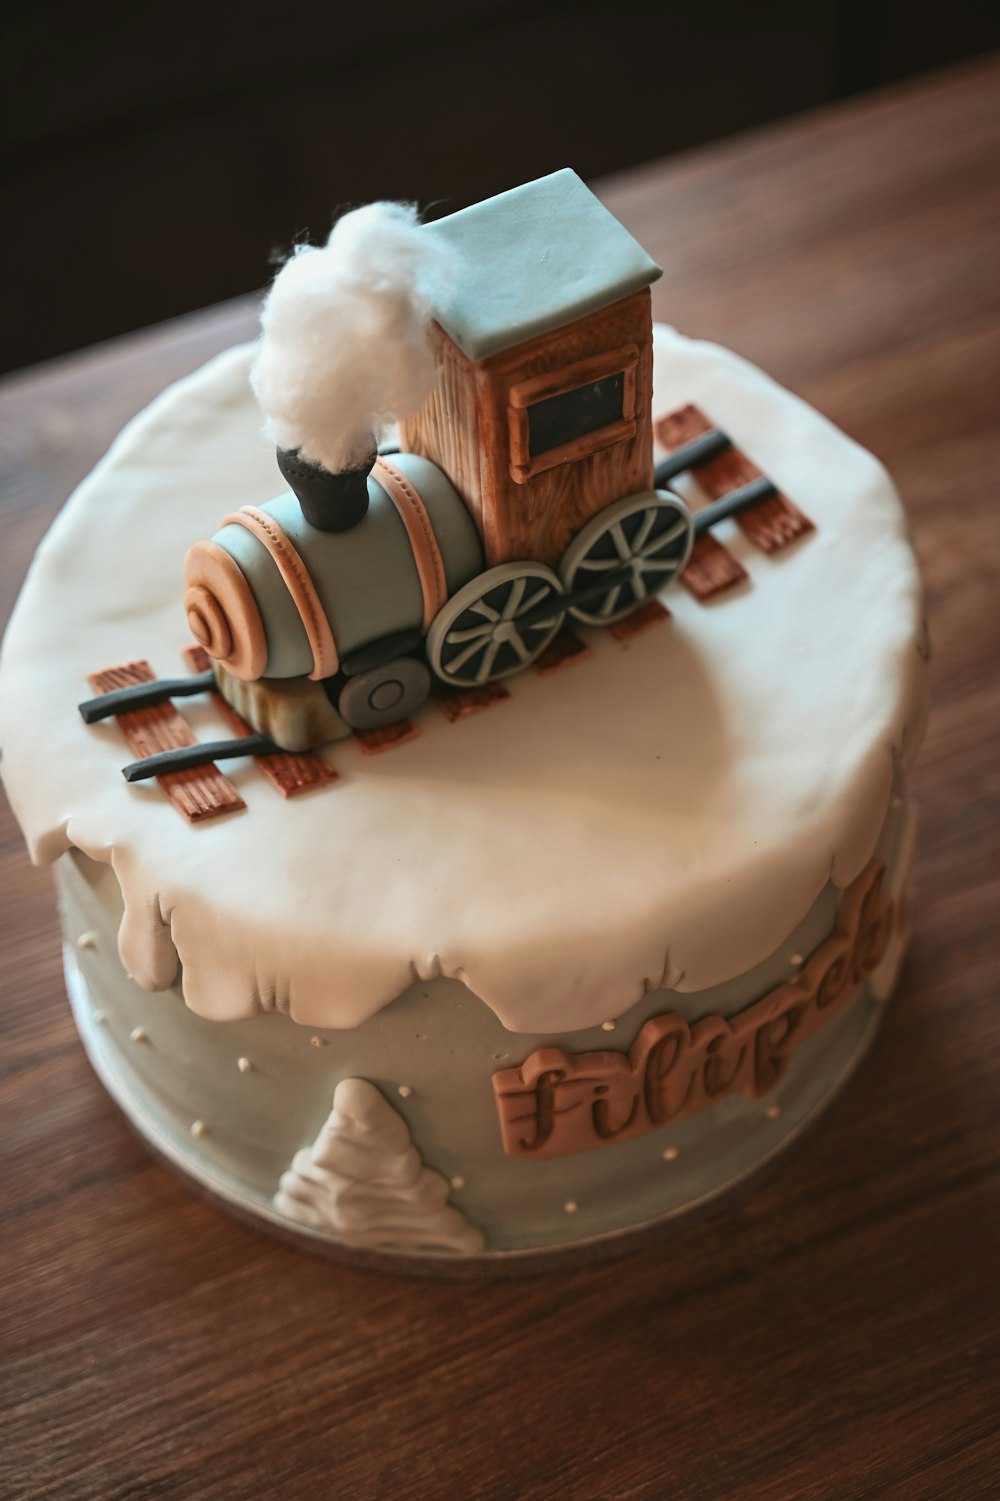 その上に電車が乗ったケーキ